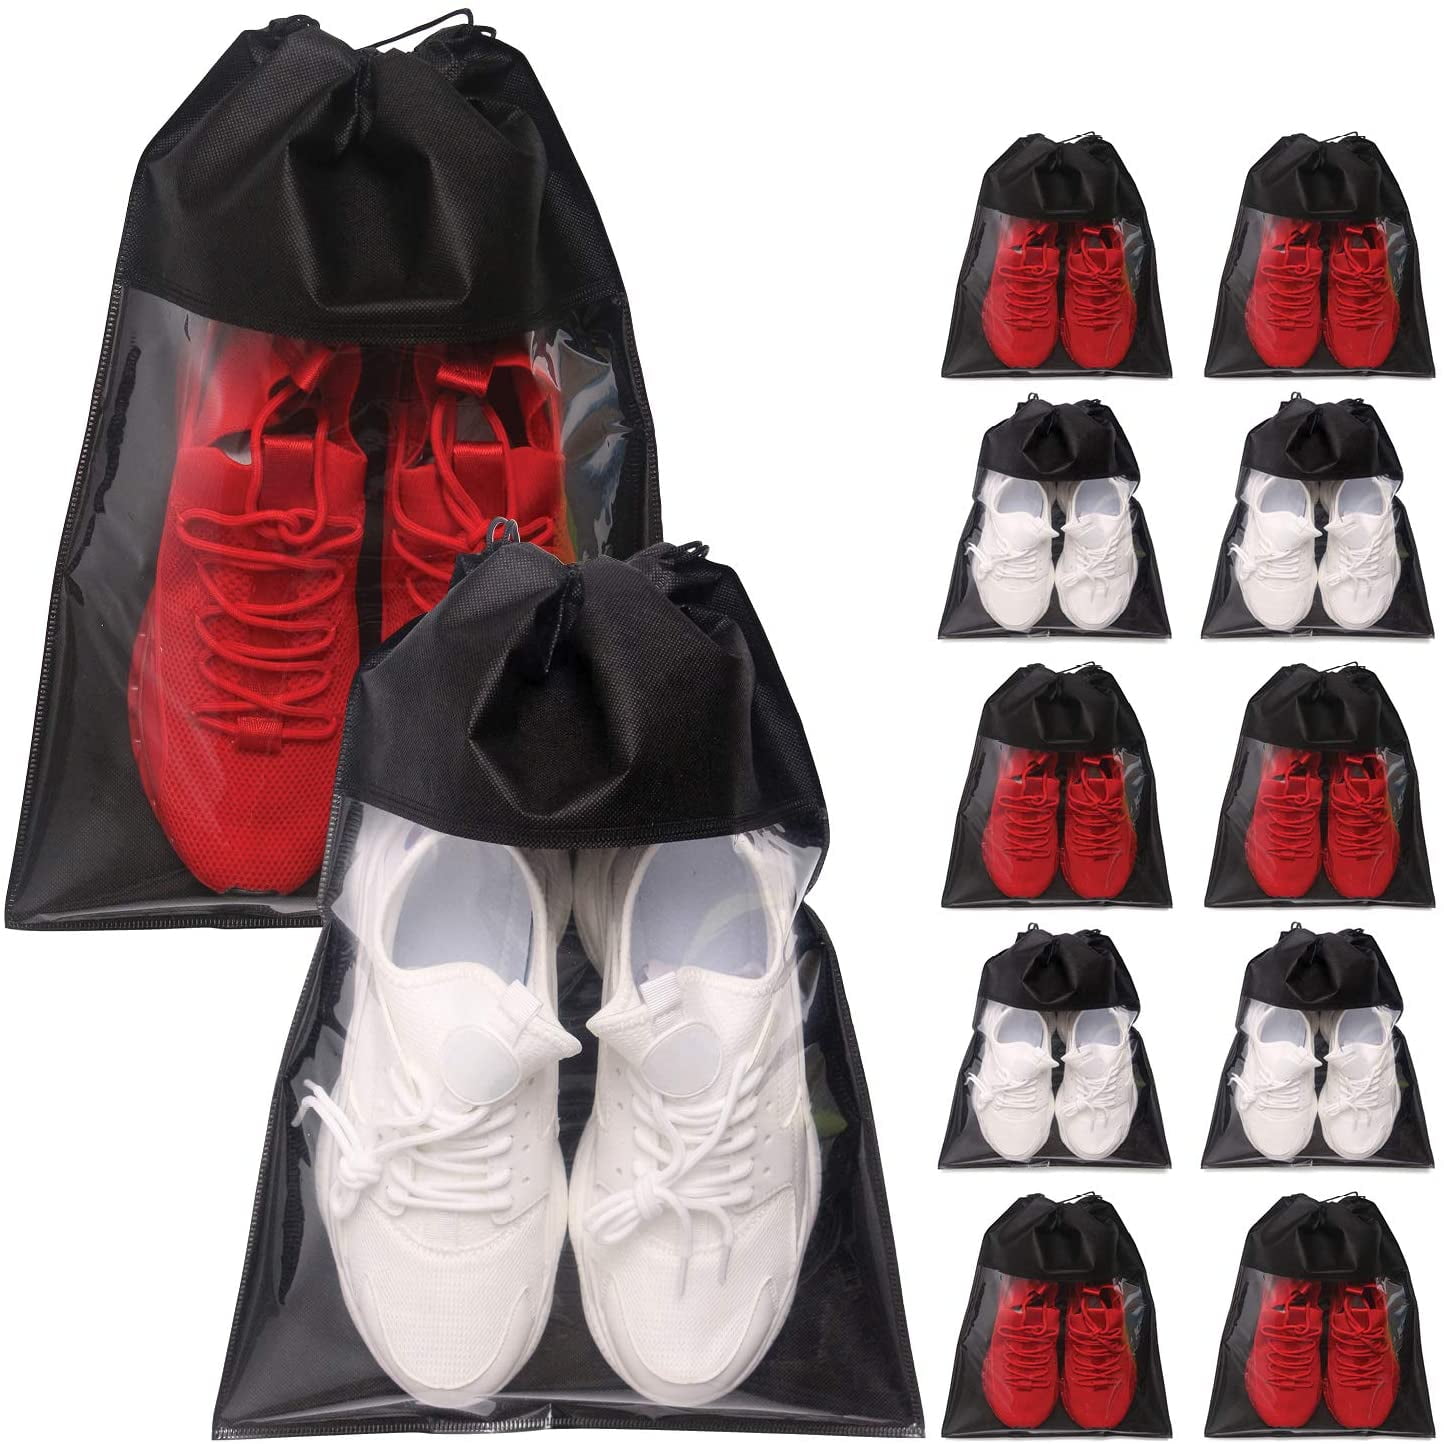 Travel Shoe Bags Waterproof Portable Dust-Proof Storage Bag Zipper Closure for Bathing Clothes Makeup Shoe 5Pcs